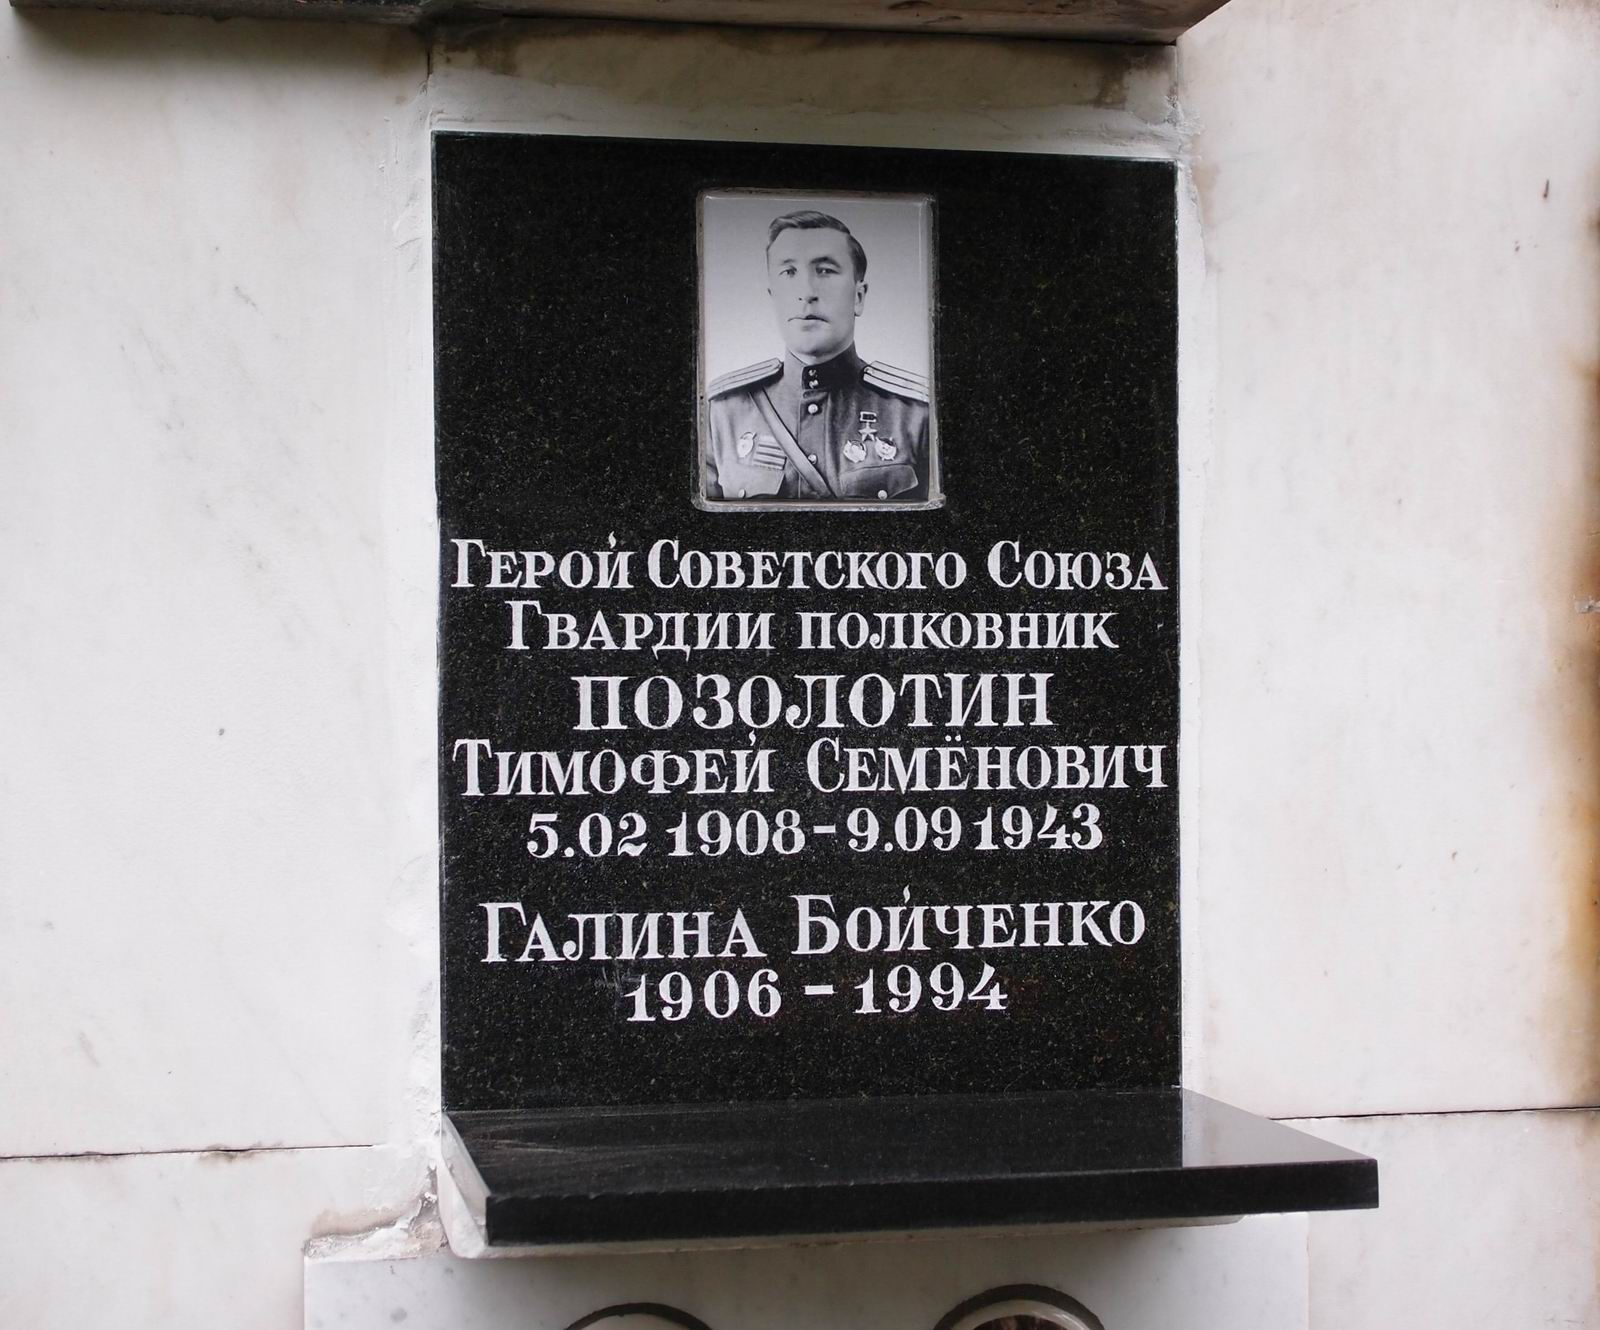 Плита на нише Позолотина Т.С. (1908-1943), на Новодевичьем кладбище (колумбарий [62]-4-2). Нажмите левую кнопку мыши, чтобы увидеть предыдущий вариант.